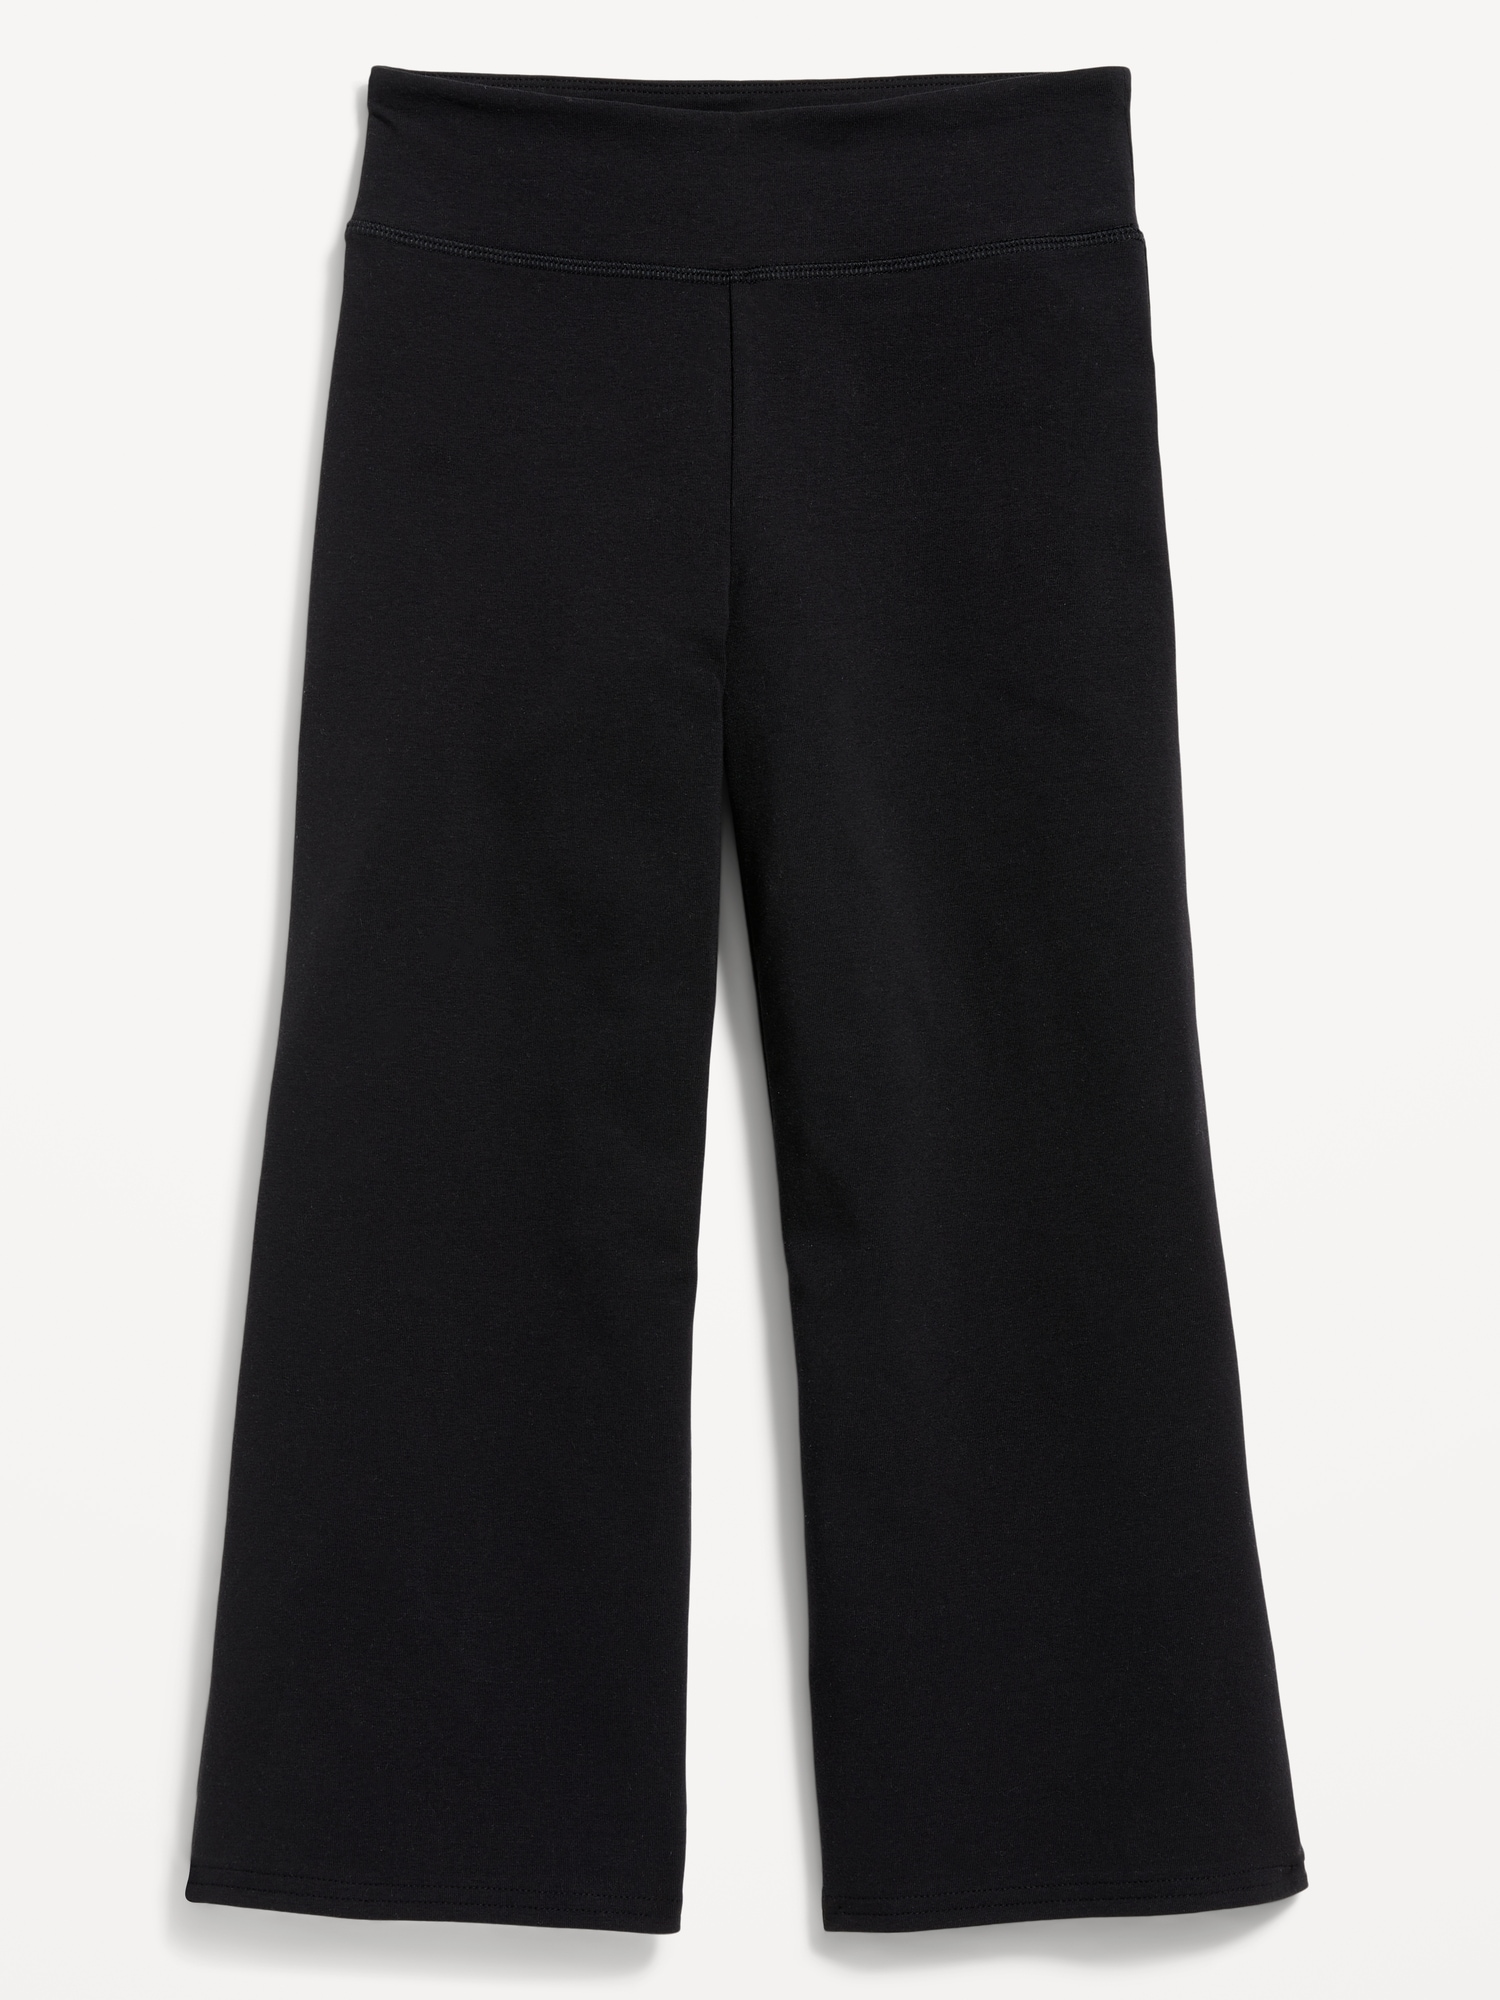 Capri Pants For Women | Old Navy